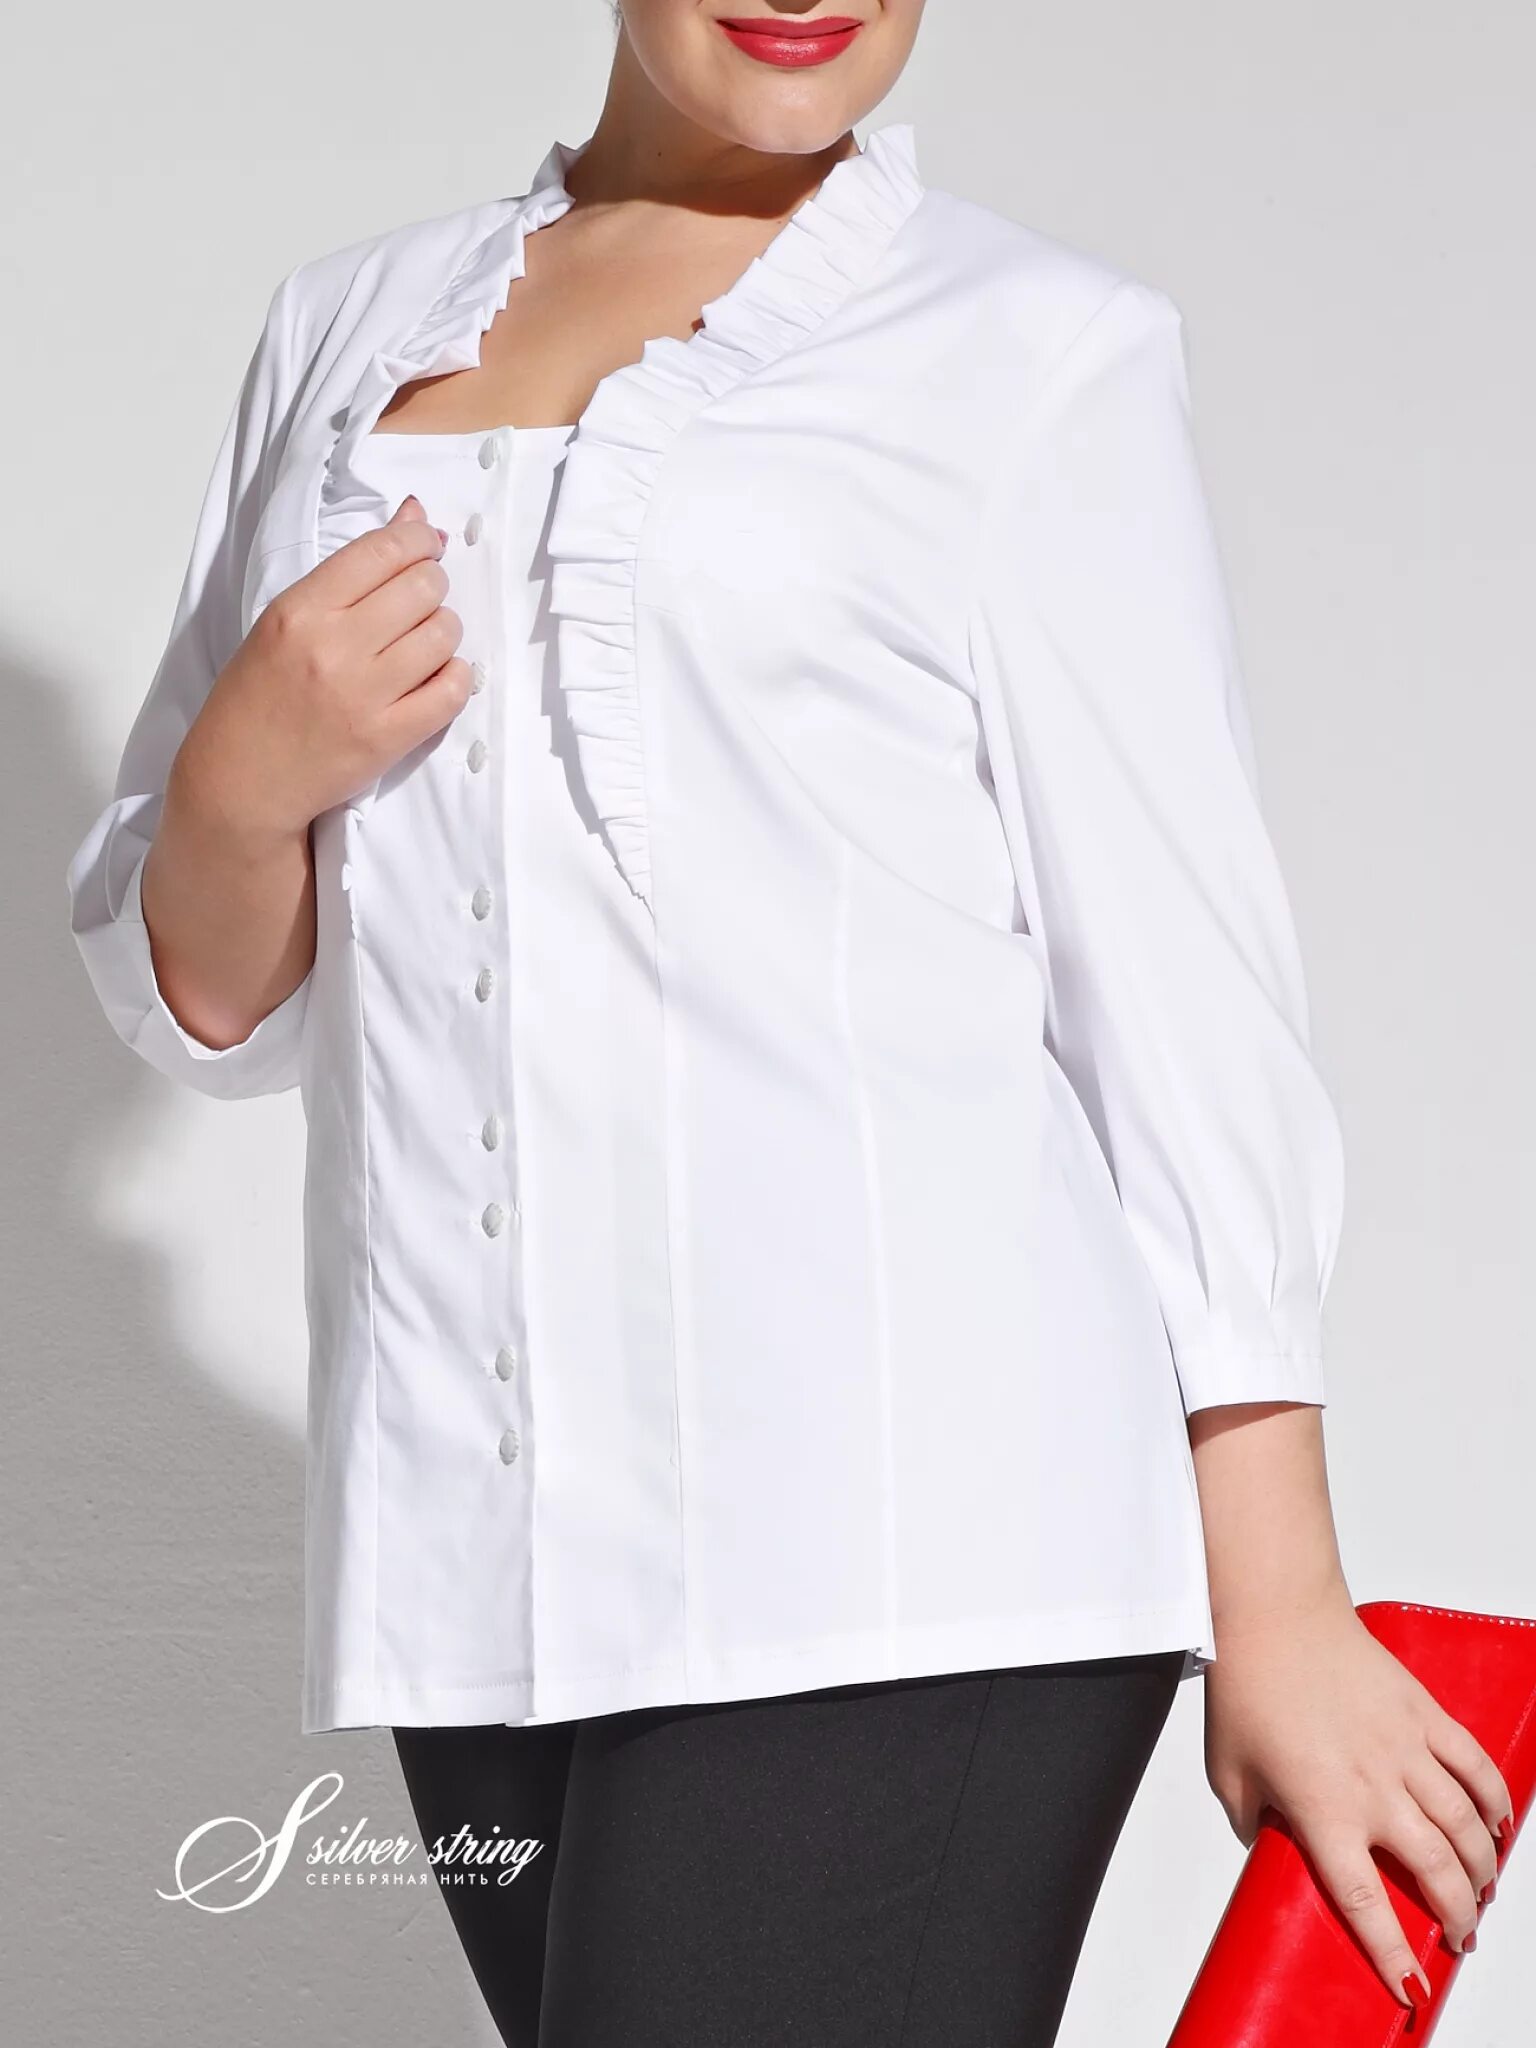 Белая блузка на валберис. Белая блузка для полных женщин. Белая нарядная блузка для женщин. Женщина в блузке. Белая рубашка для полных женщин.